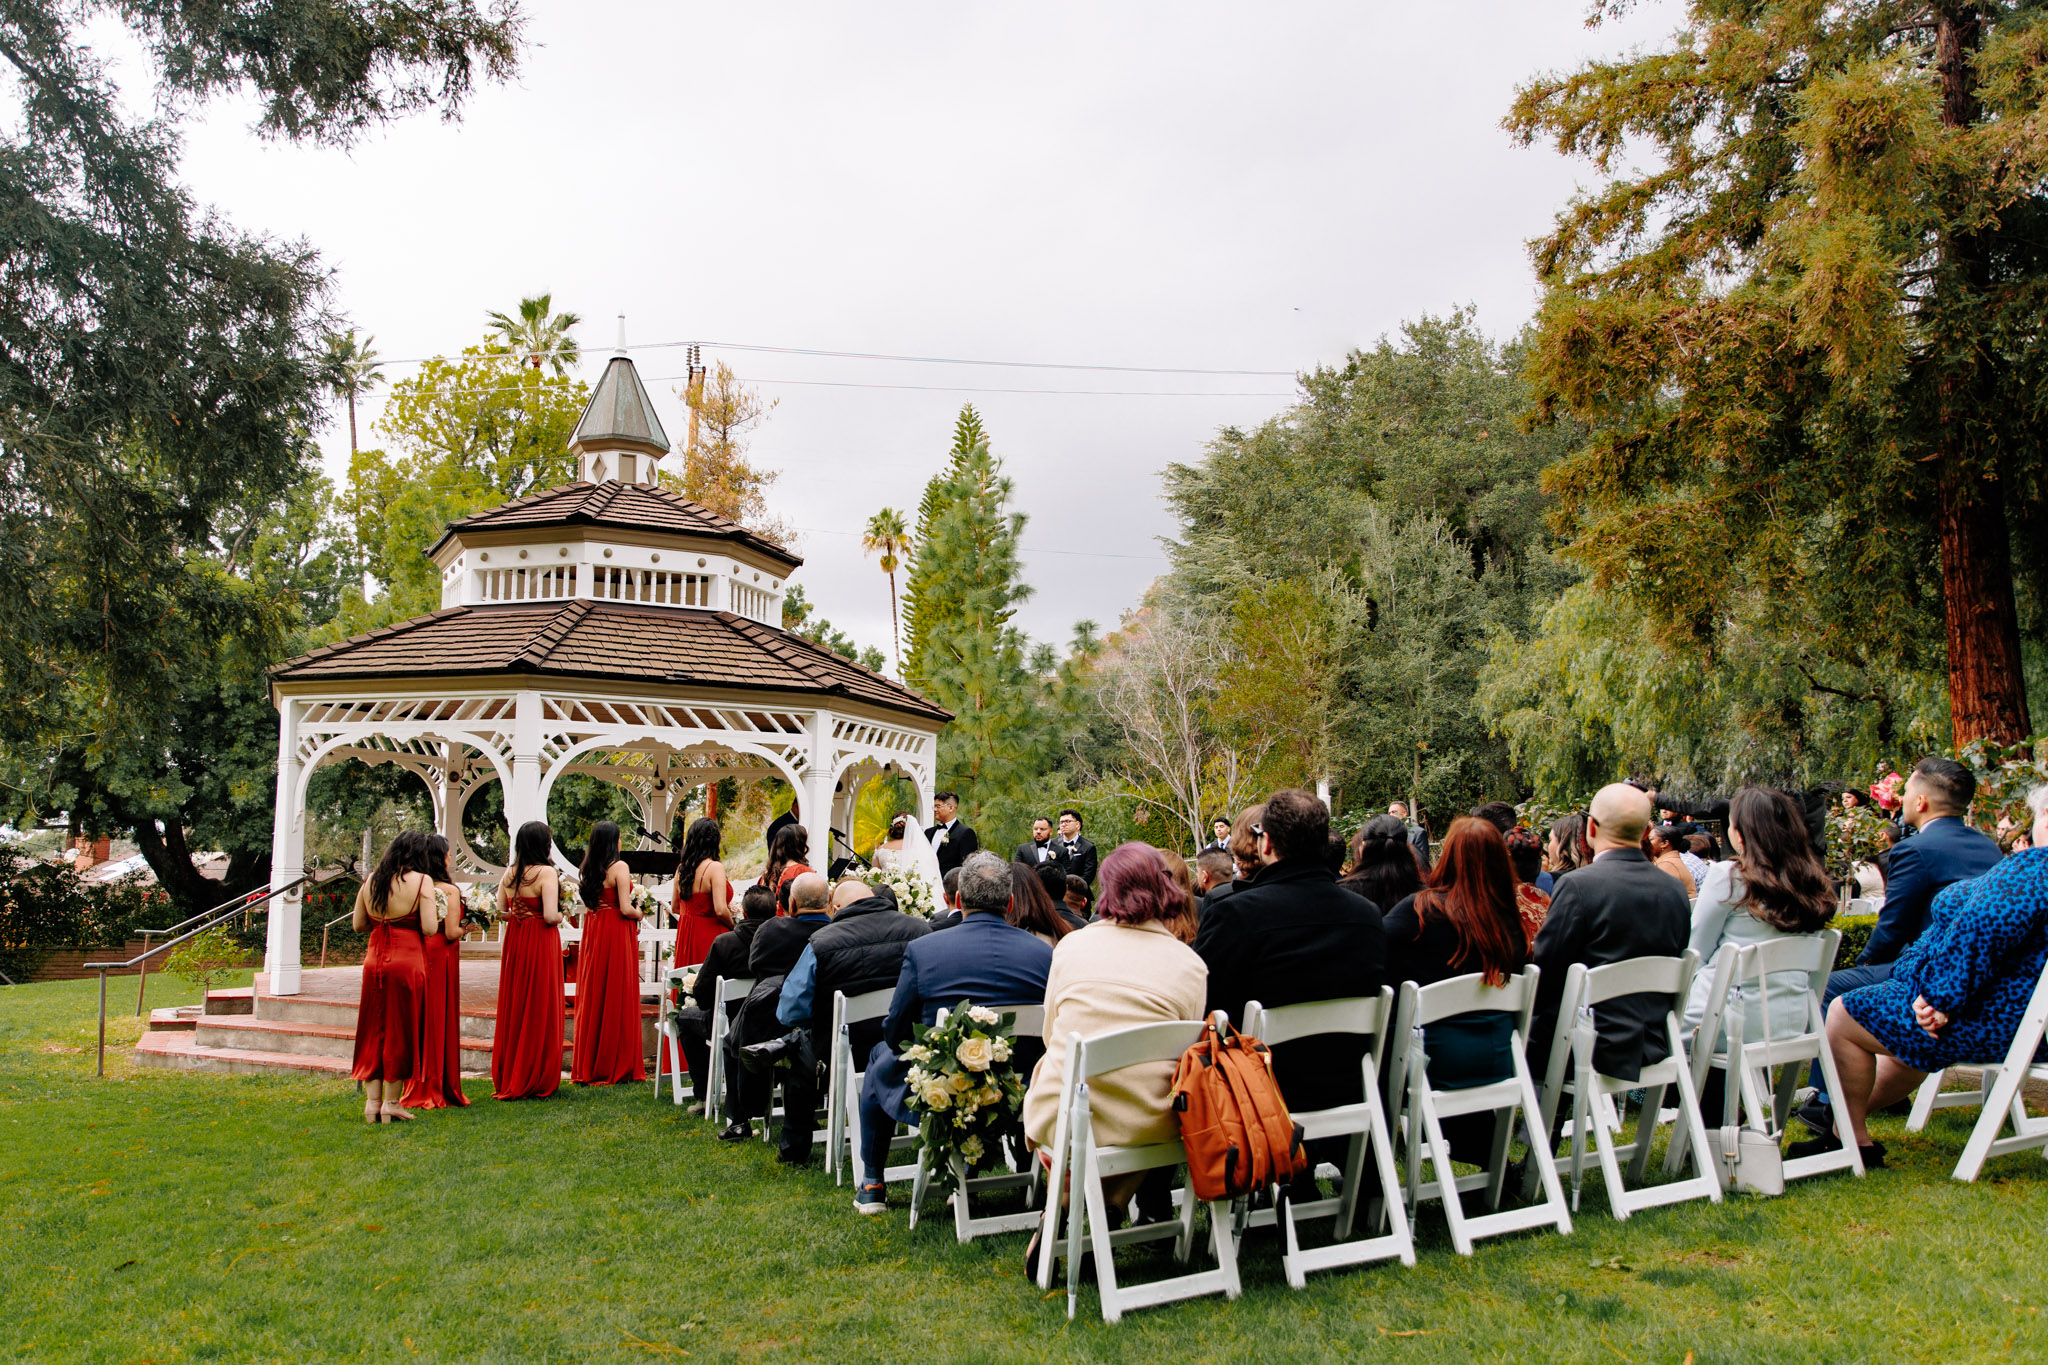 Brand Park Wedding; Los Angeles wedding venues